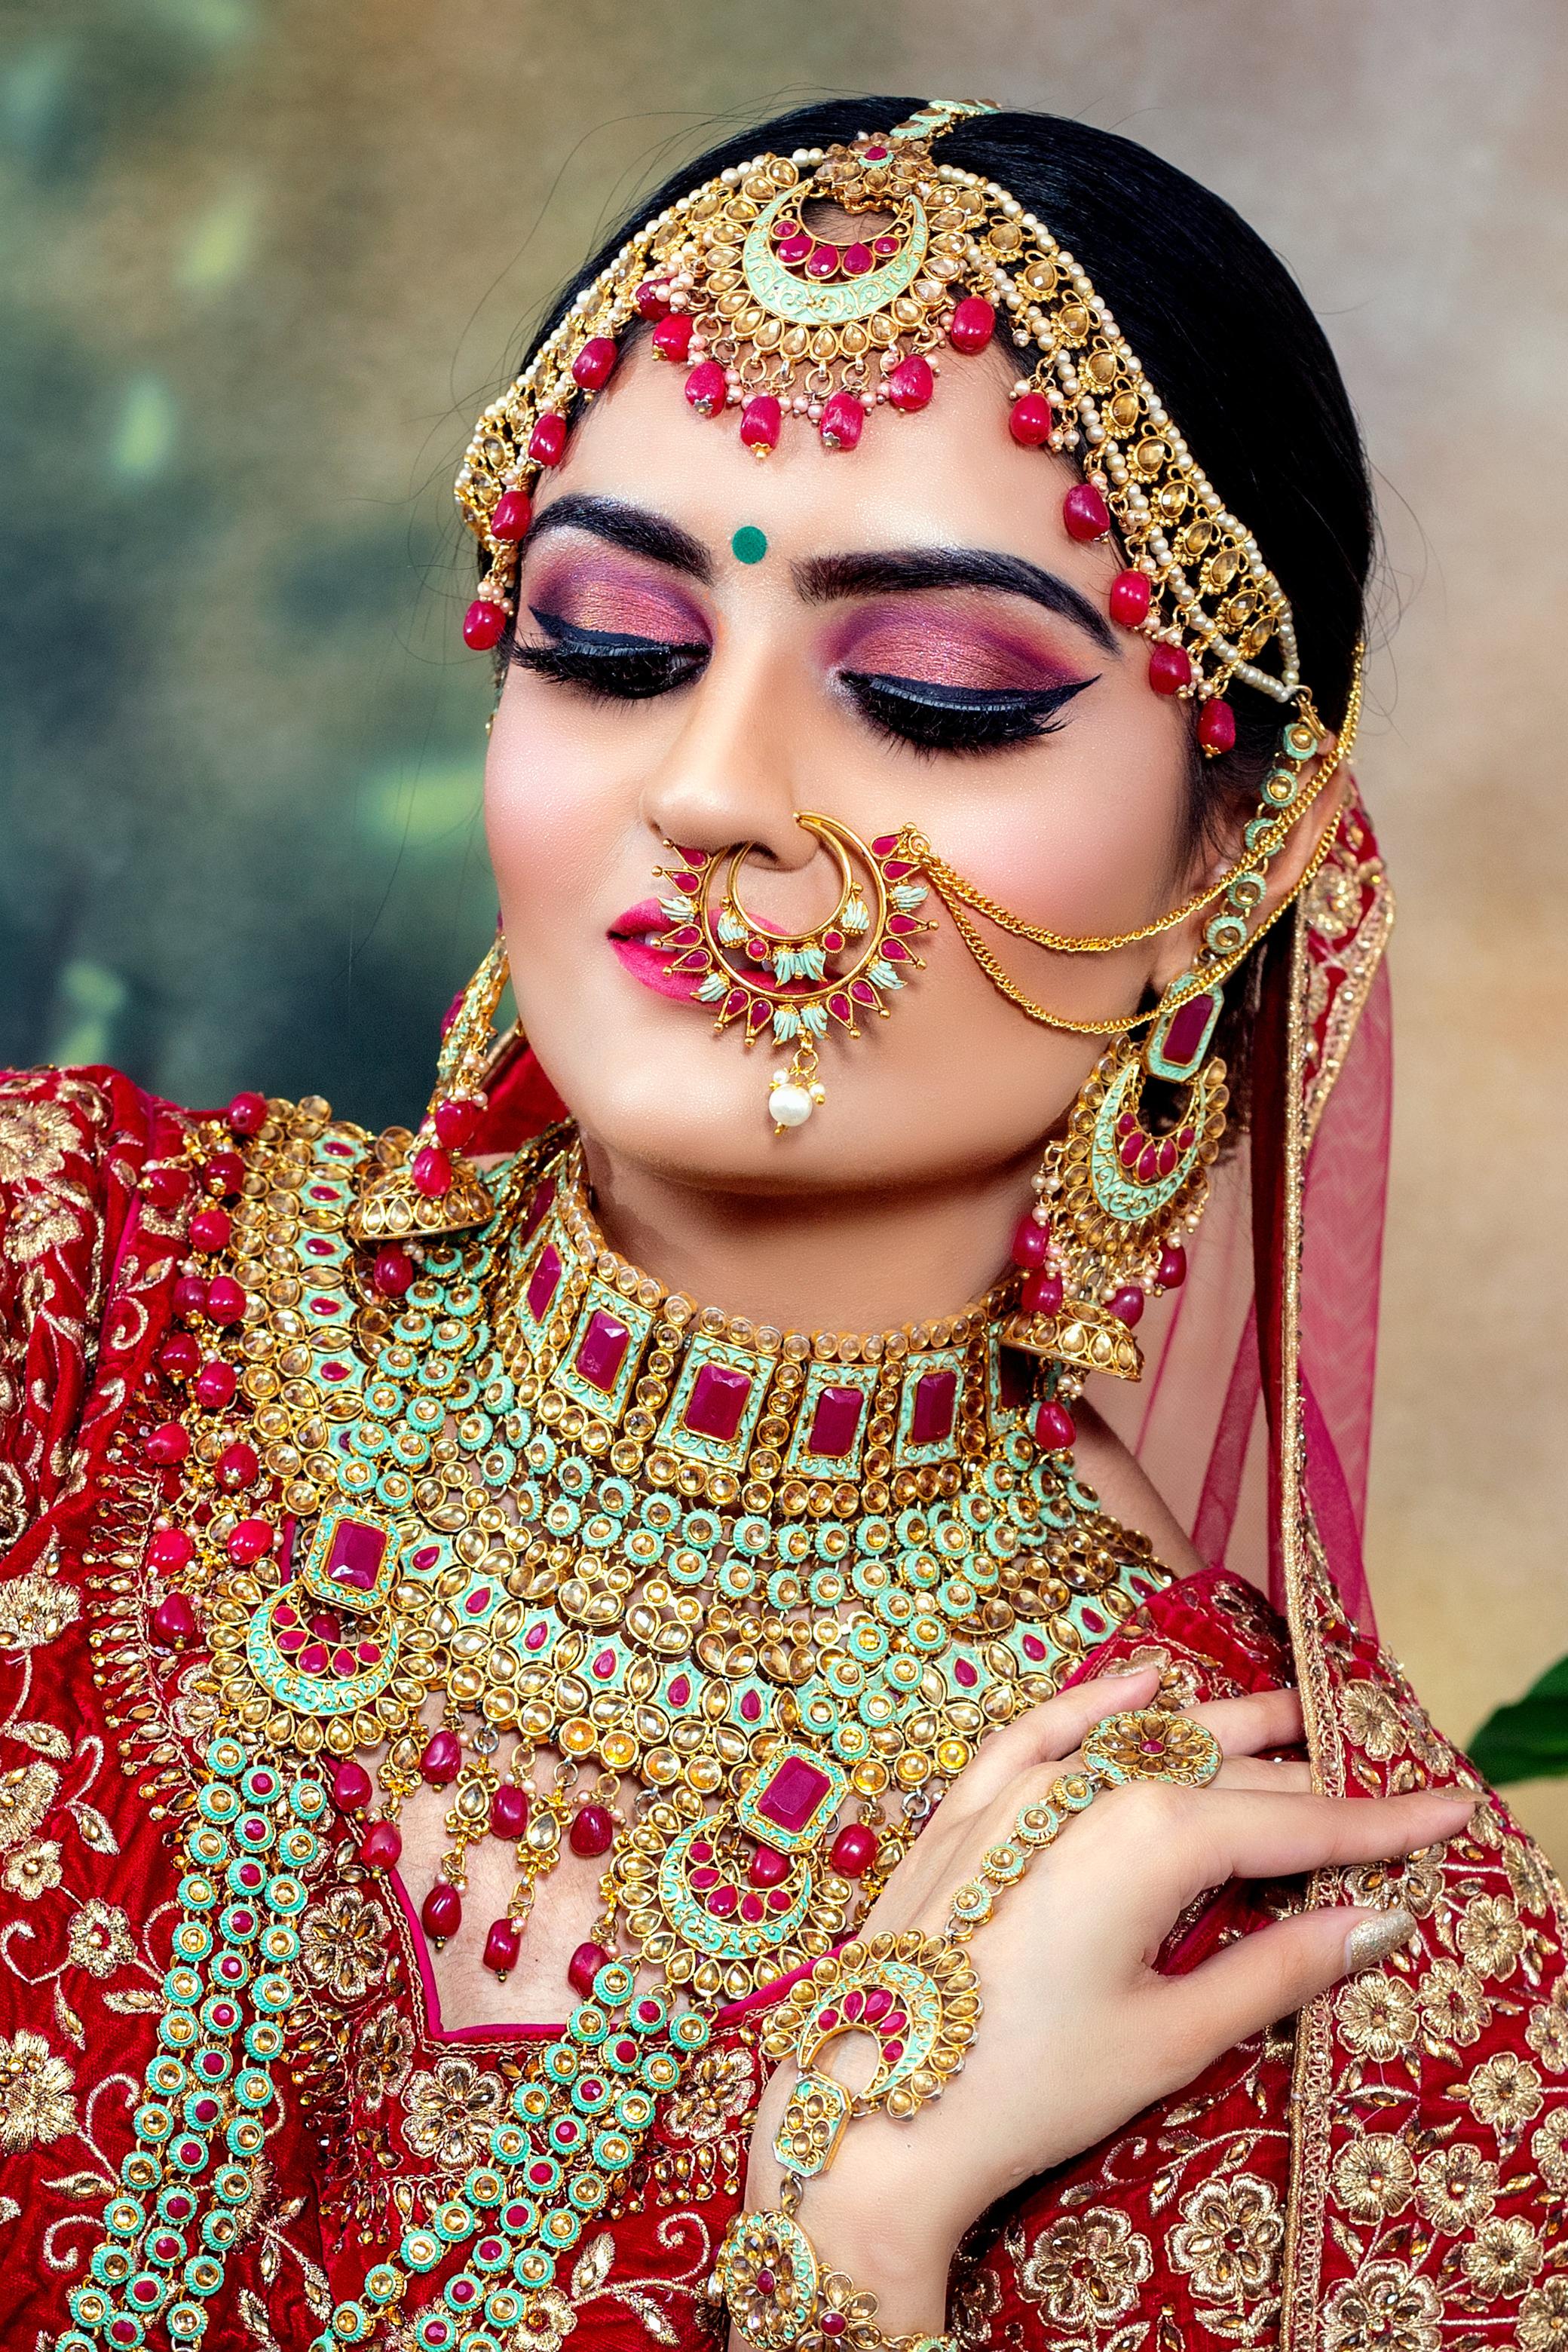 Indyjskie ceremonie zaślubin – barwny świat tradycji i symboliki